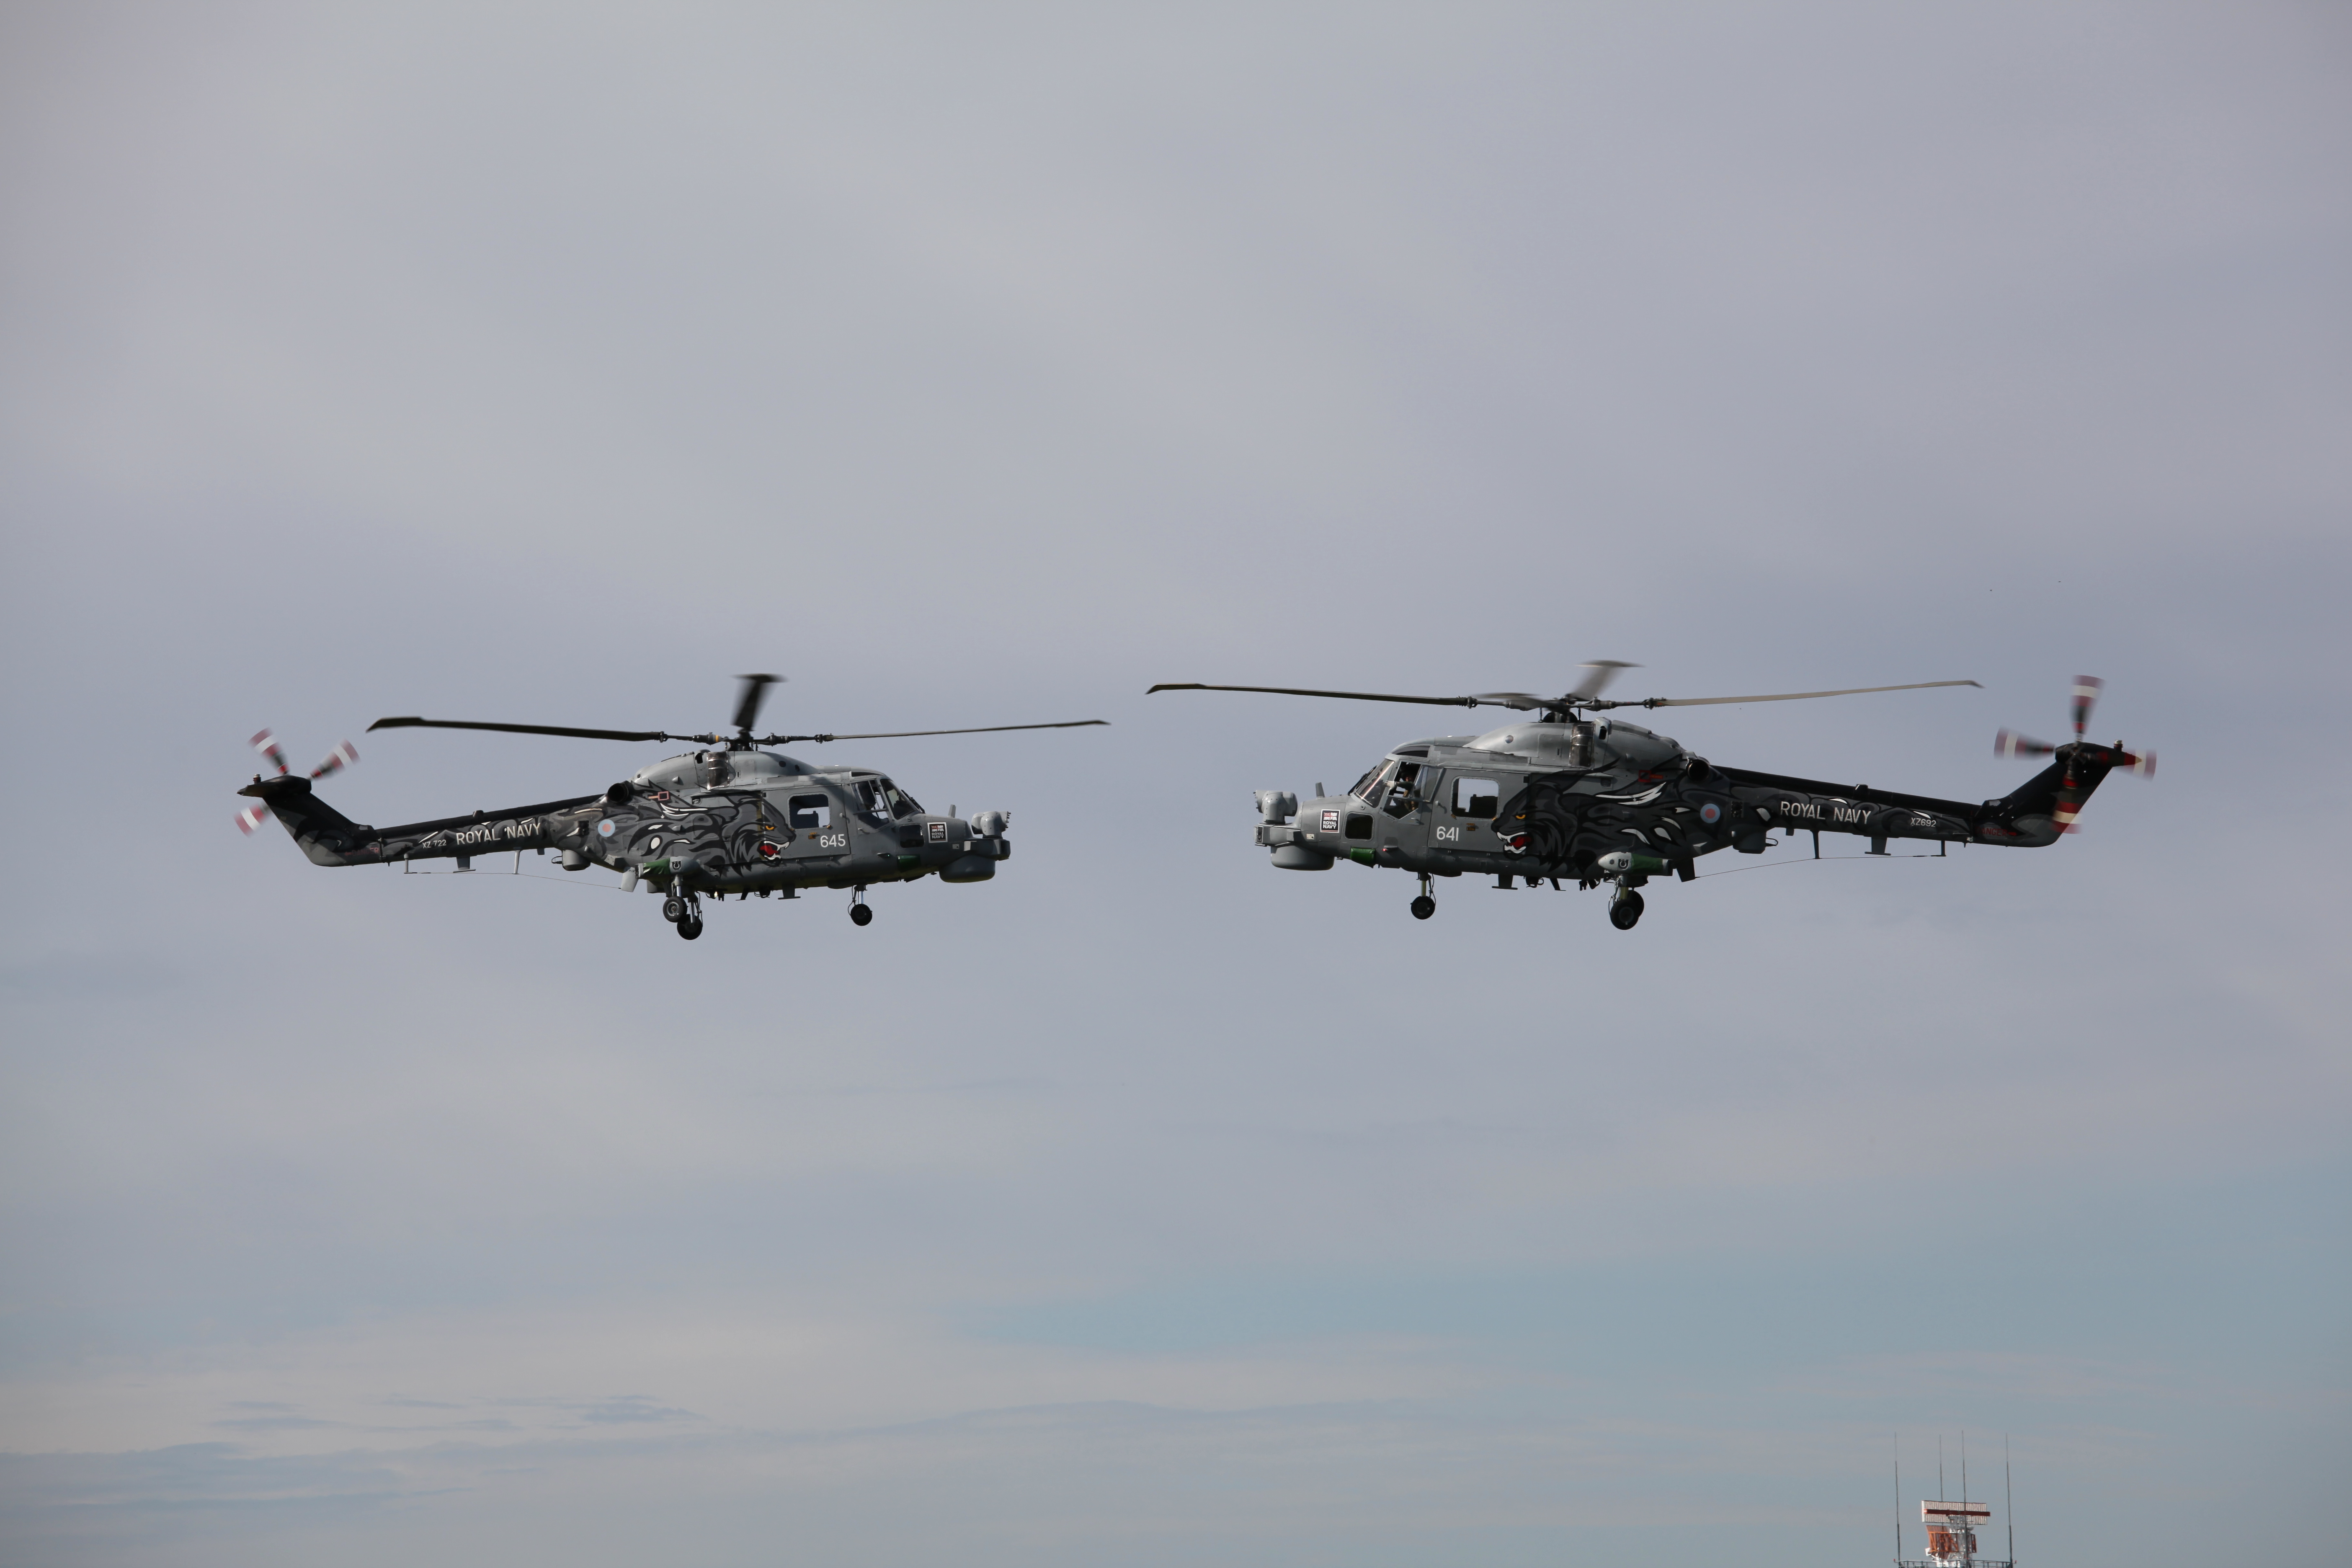 Anlässlich der Luftwaffentage in den Niederlanden: 2 Lynx-Hubschrauber im Ballett